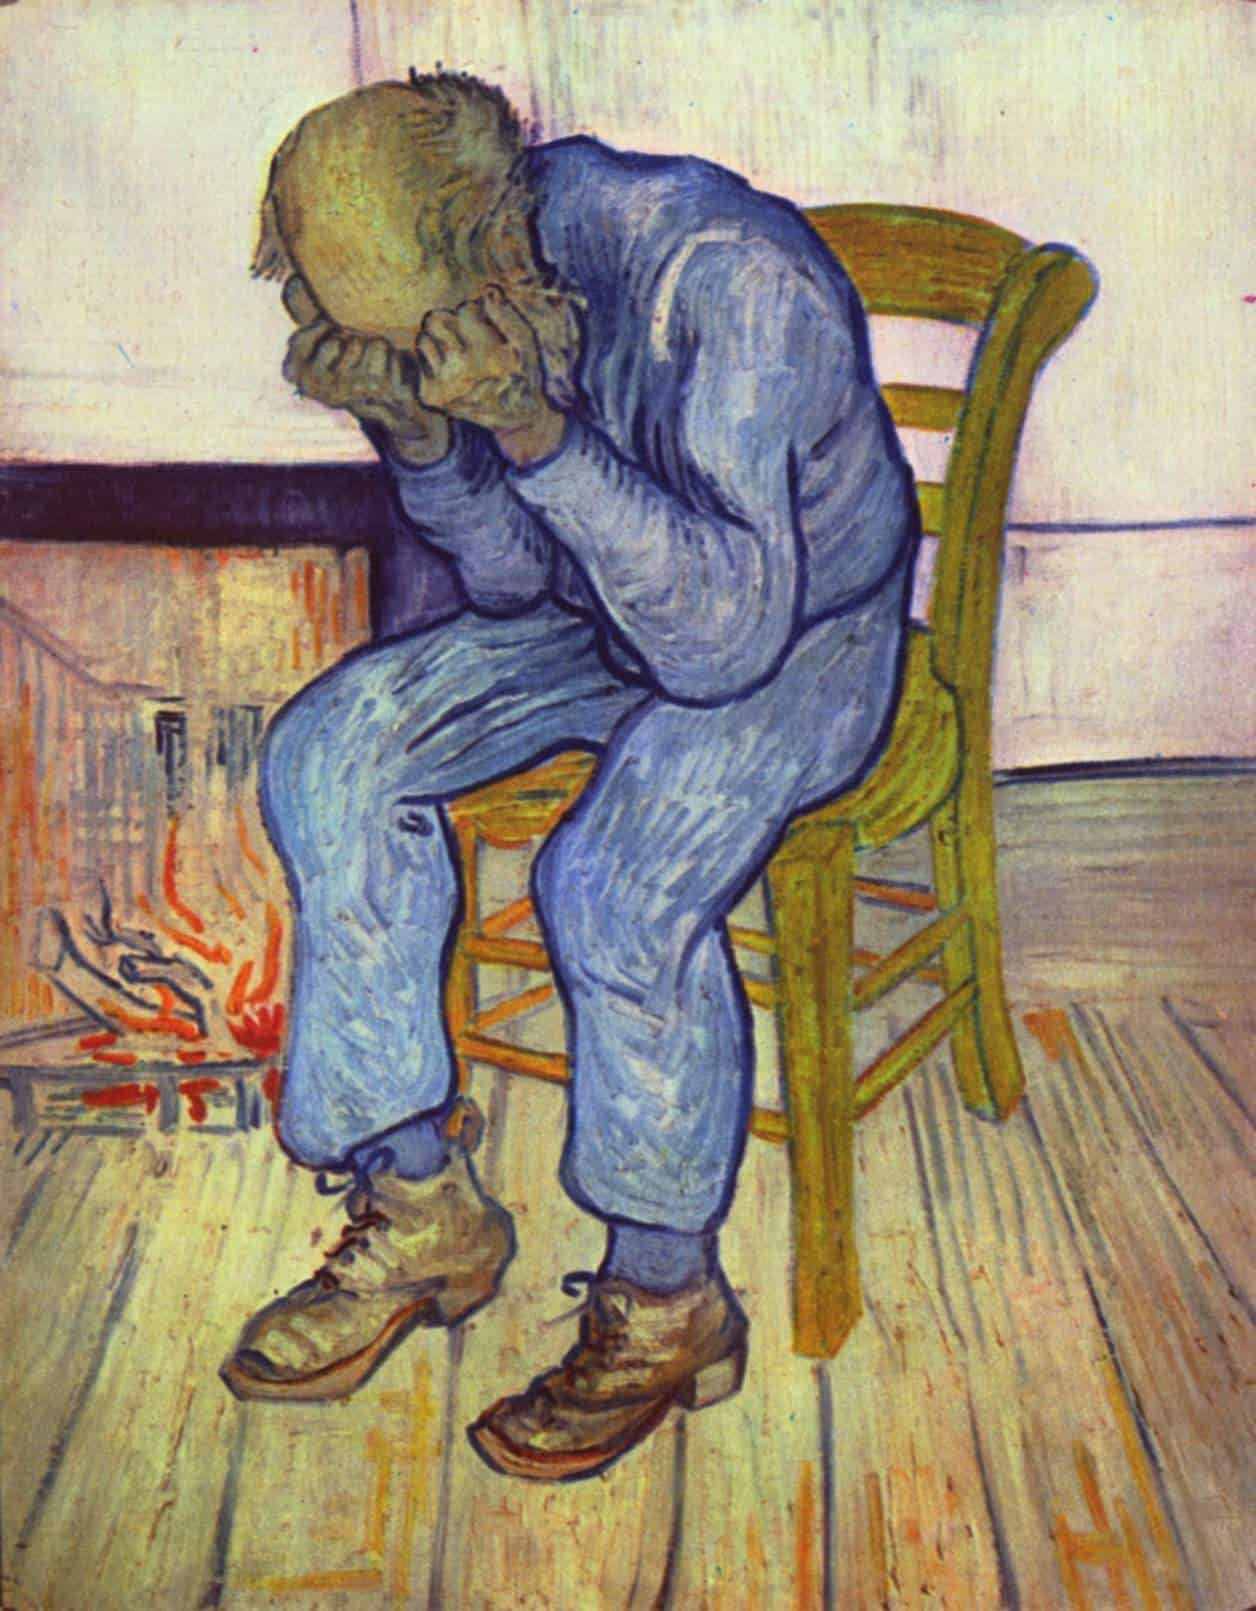 Van Gogh paintings